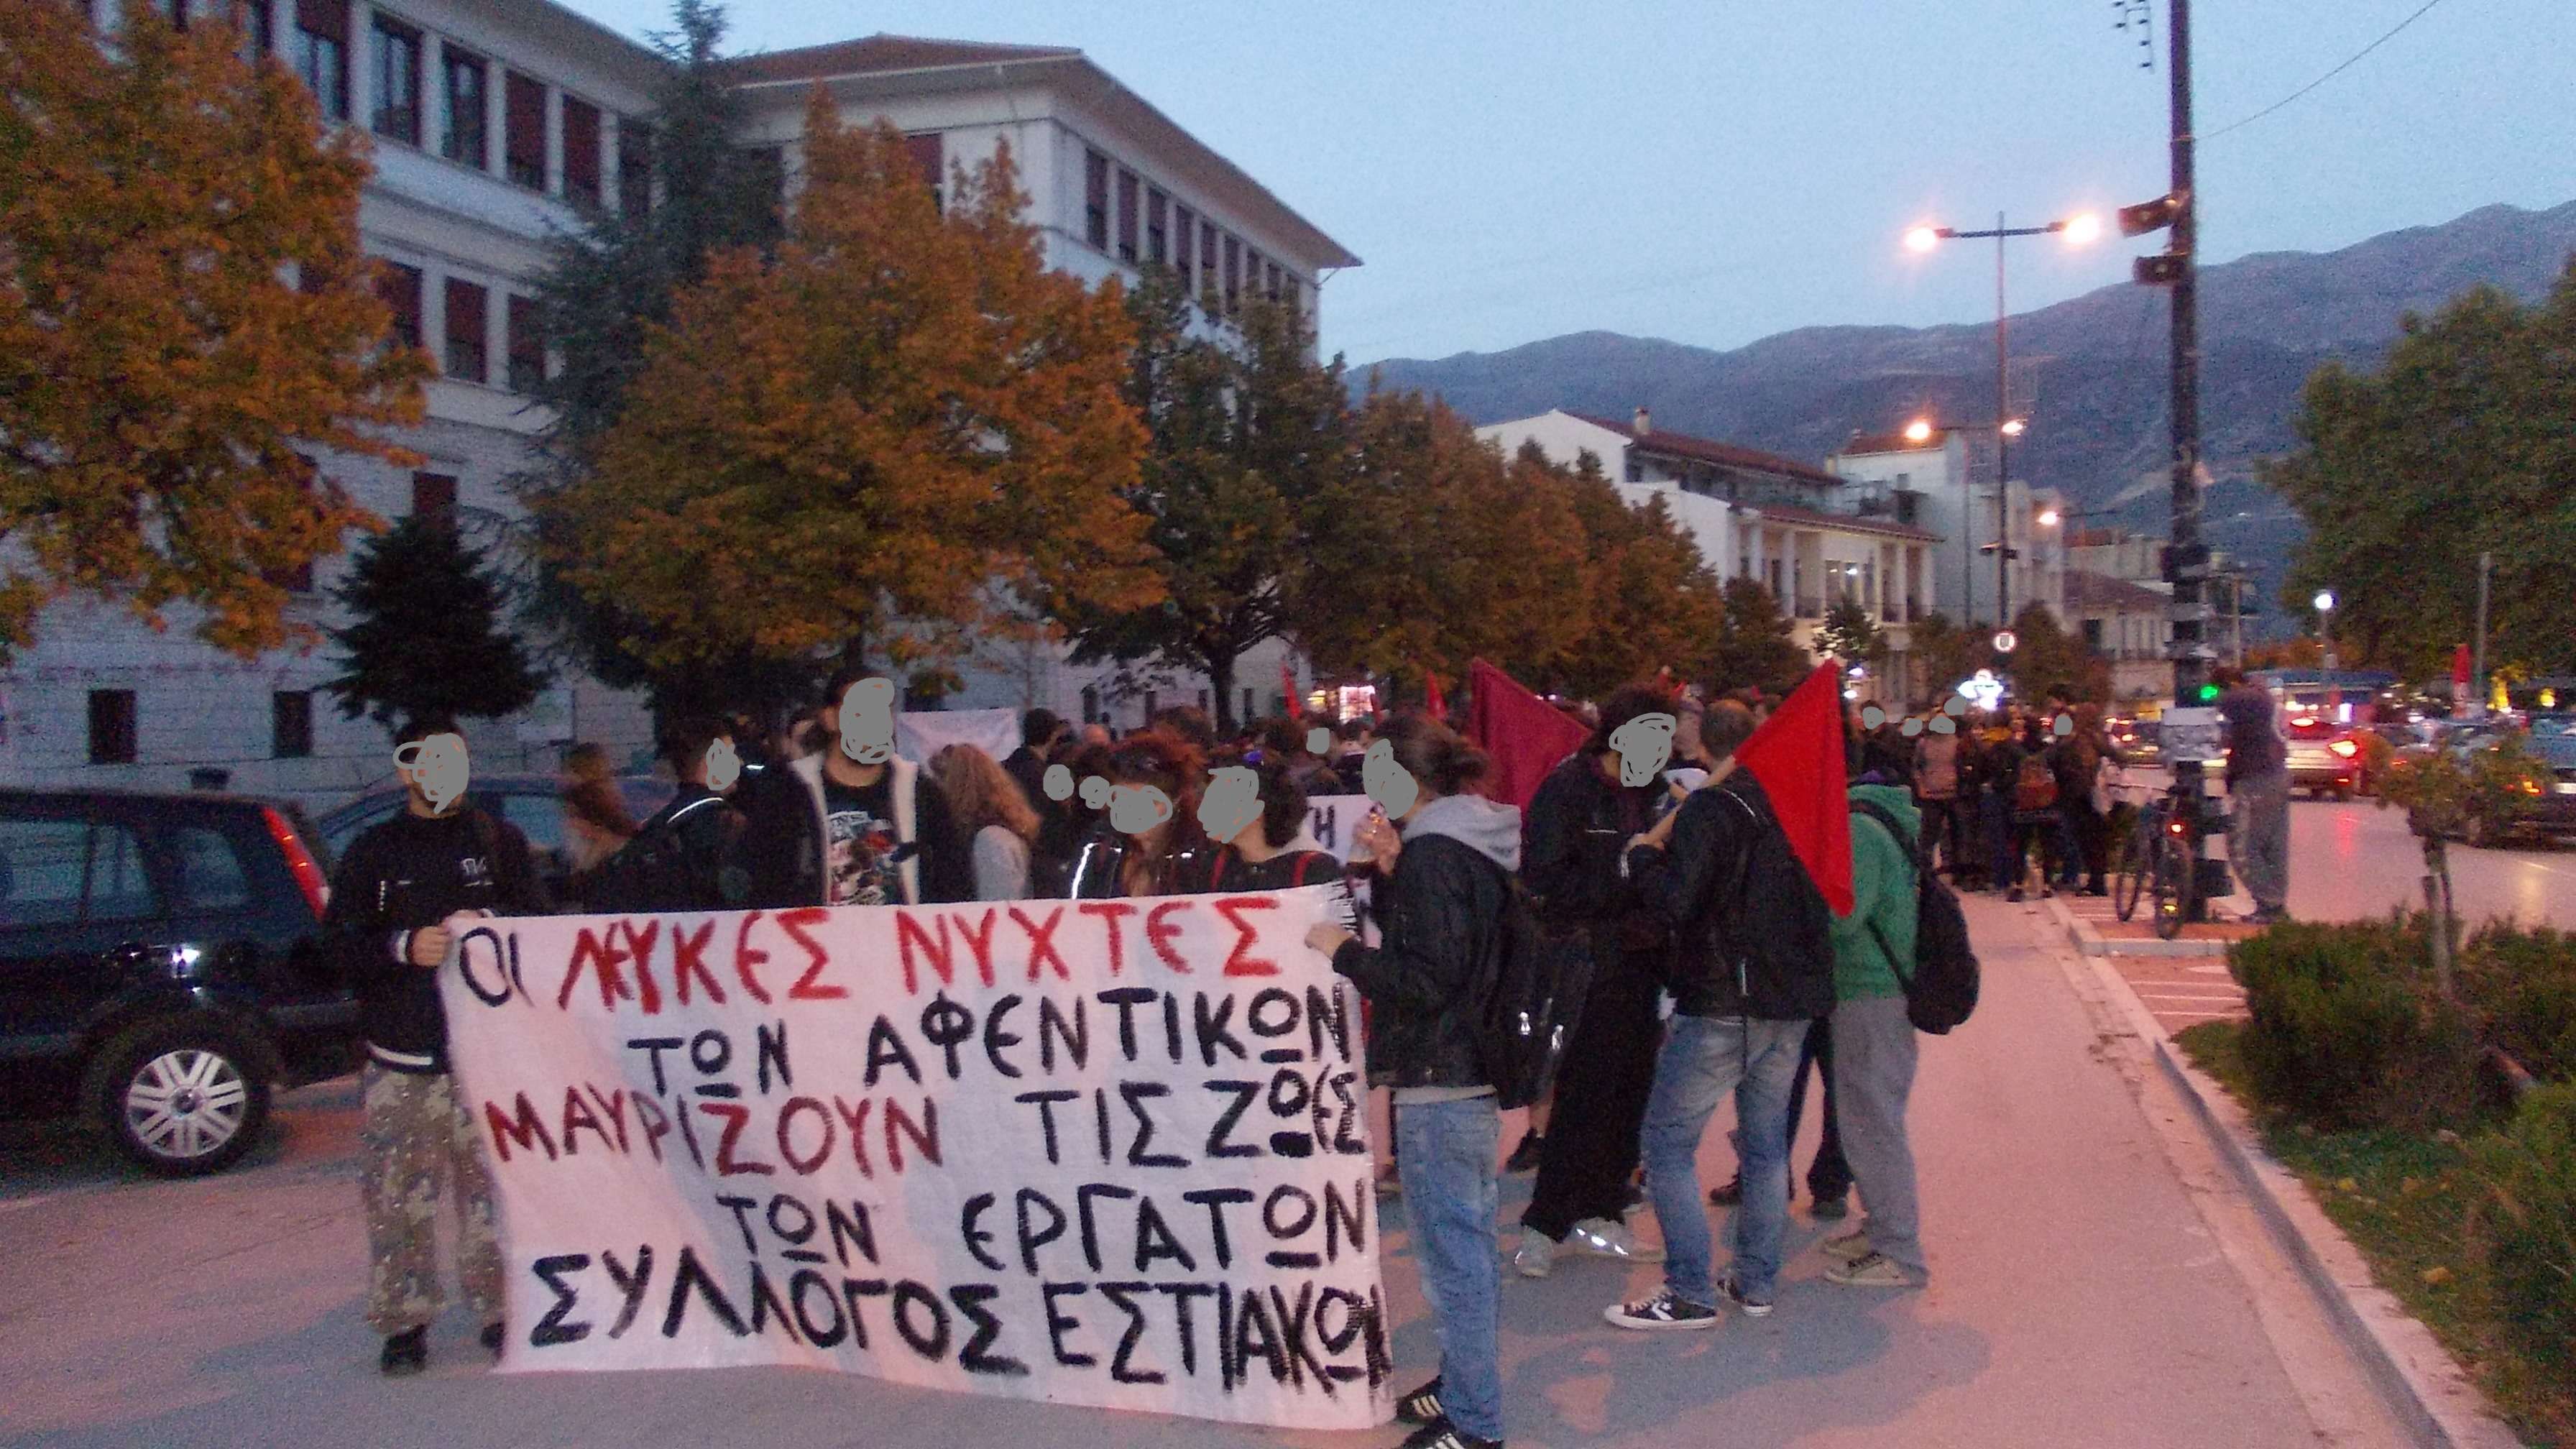 Ιωάννινα: Ενημέρωση από την διαδήλωση ενάντια στις “Λευκές νύχτες”